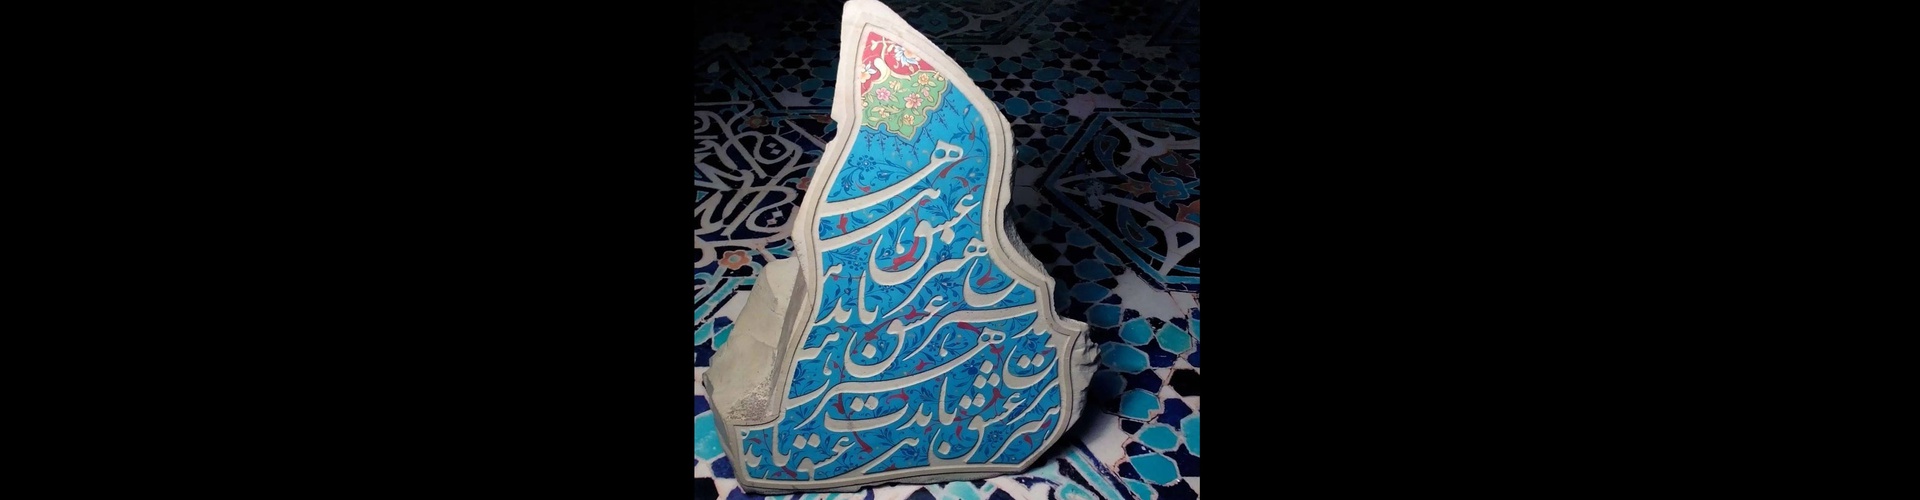 گالری آثار تذهیب وحیده میراخانلو از ایران